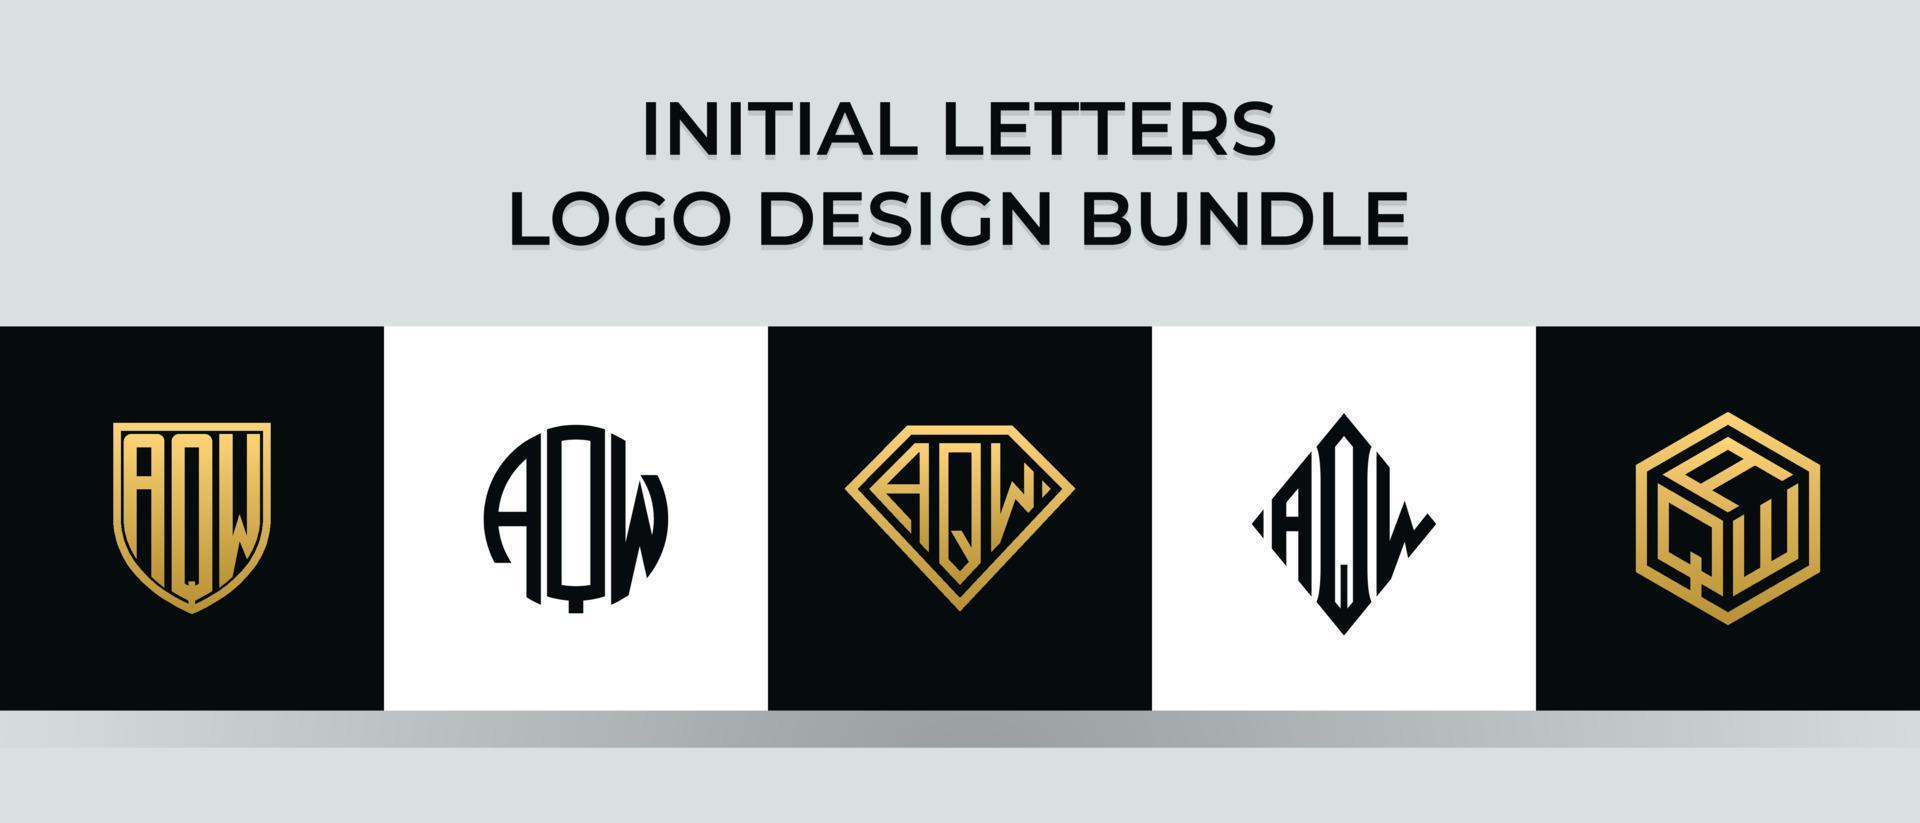 beginletters aqw logo-ontwerpen bundel vector